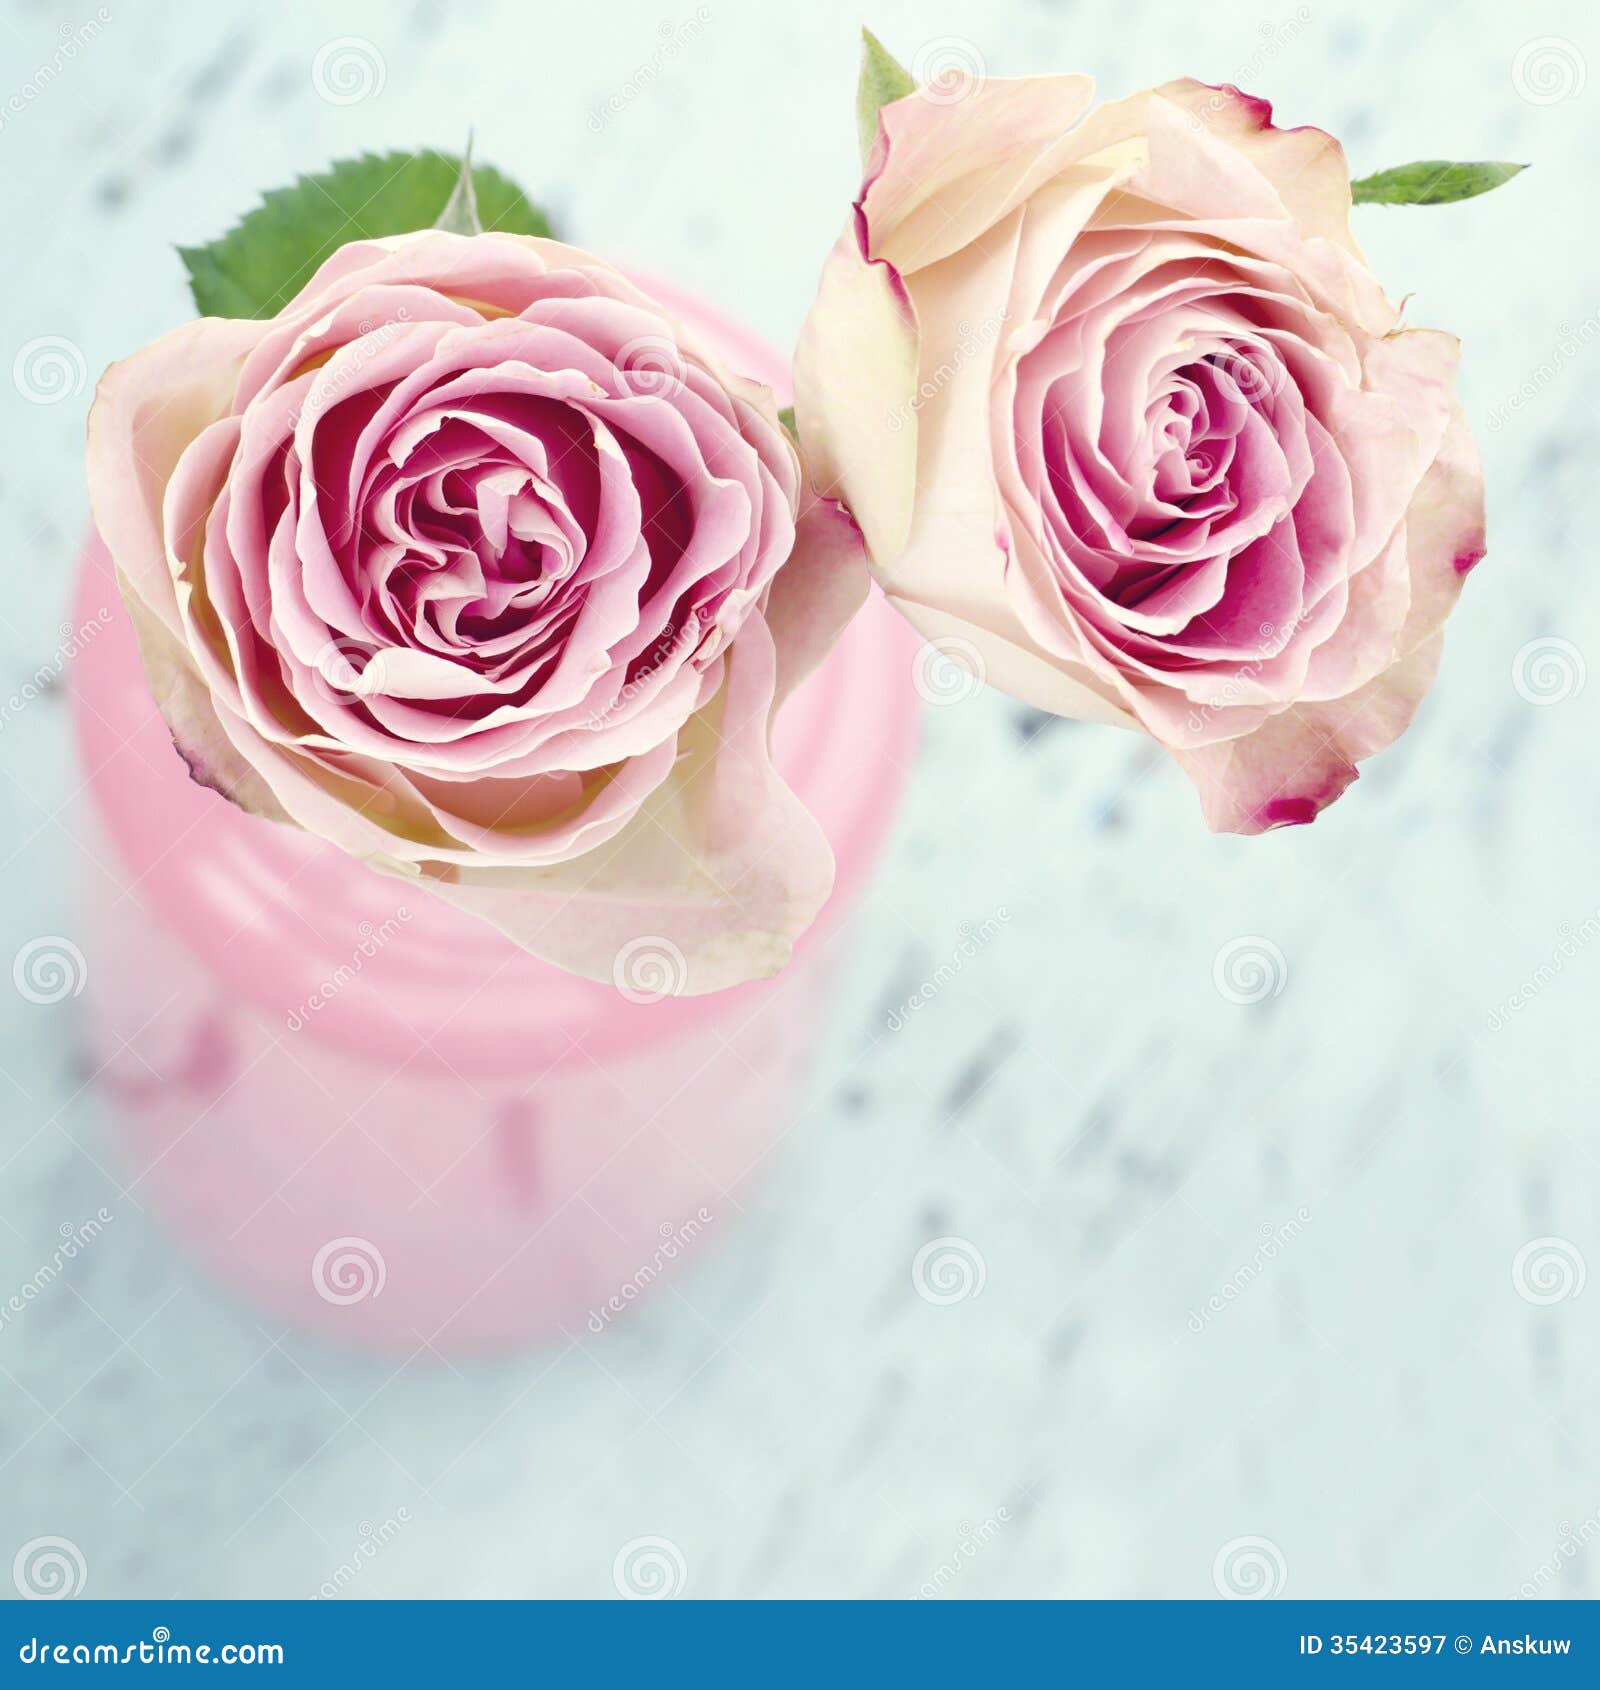 https://thumbs.dreamstime.com/z/pink-roses-bottle-wooden-background-glass-light-blue-vintage-35423597.jpg